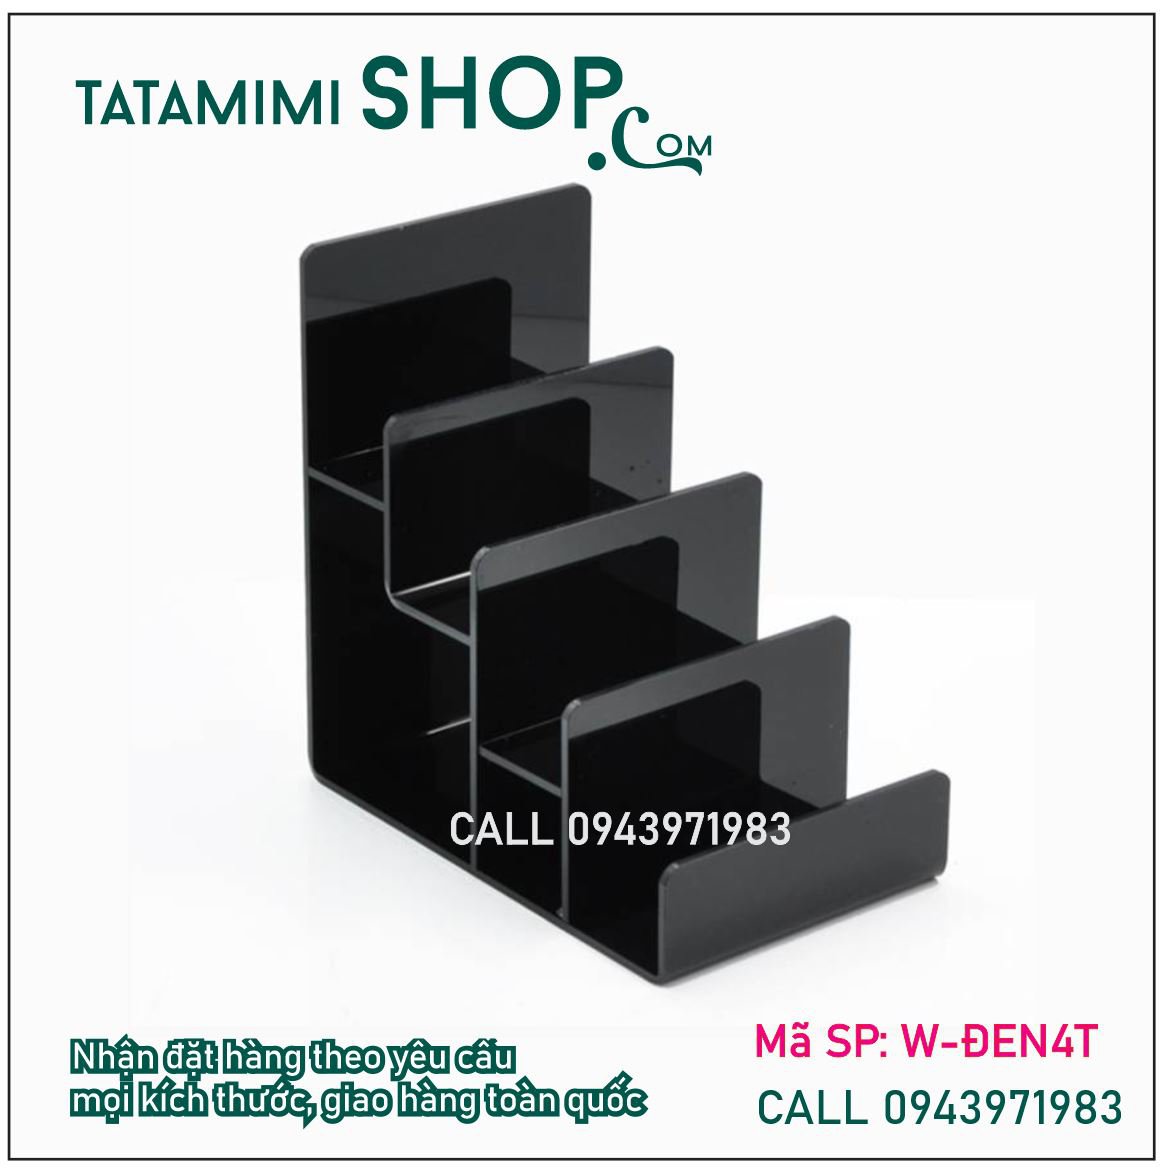 Kệ ví mica đen 4 tầng 2MM | TATAMIMISHOP.COM